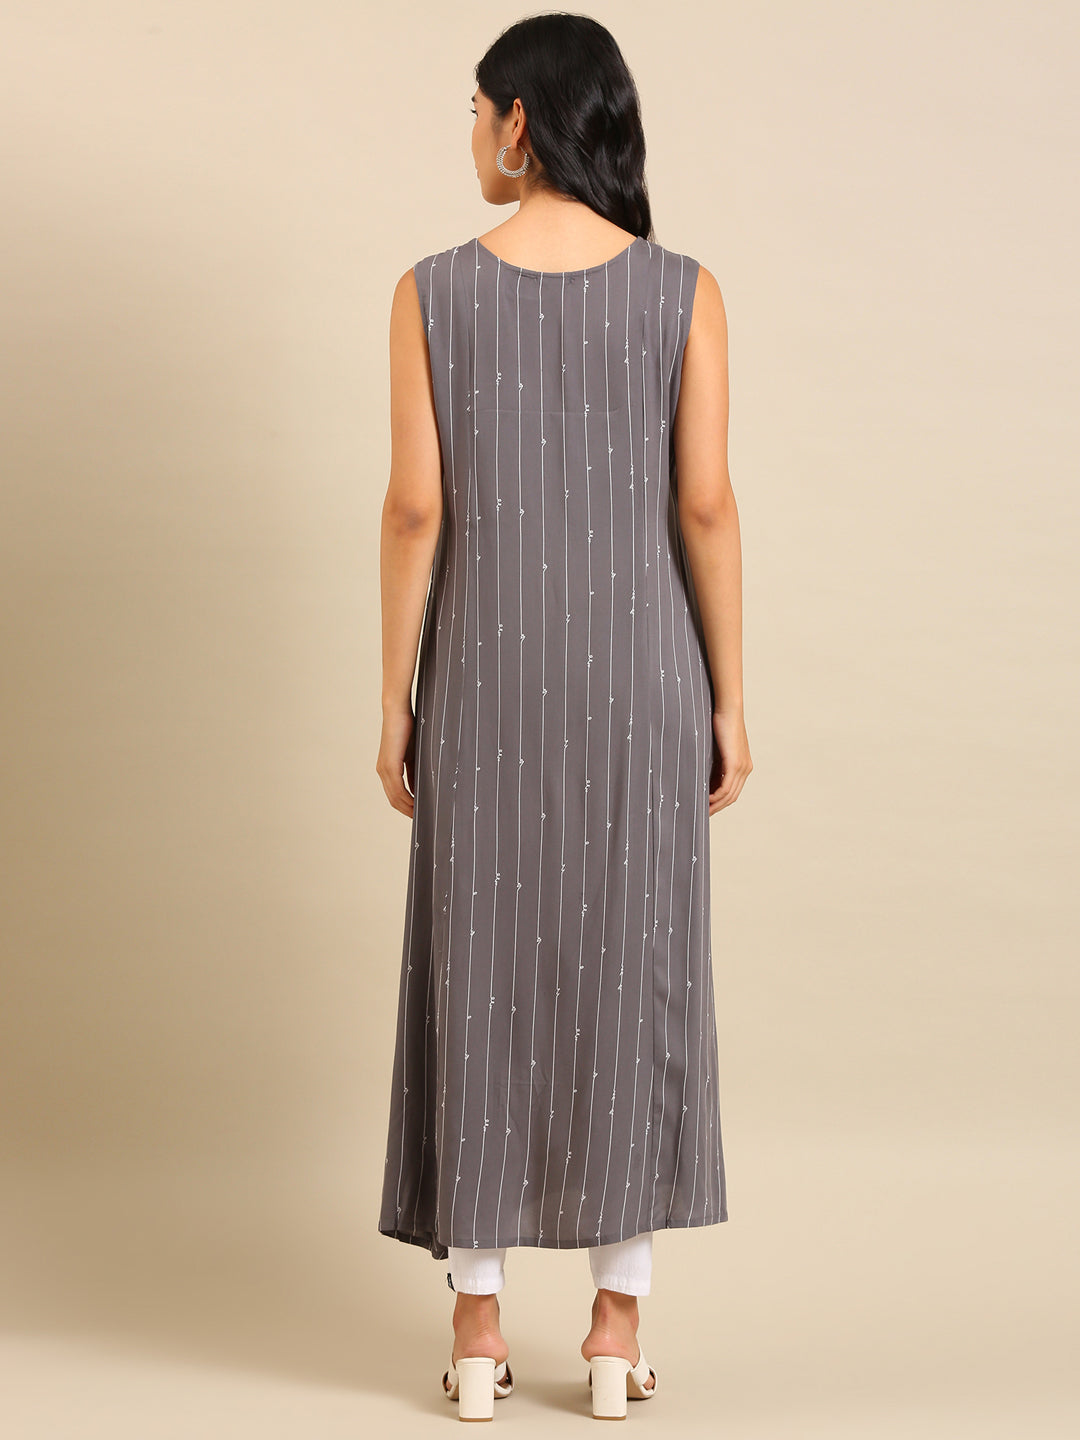 Women's Grey Striped A-Line Kurta